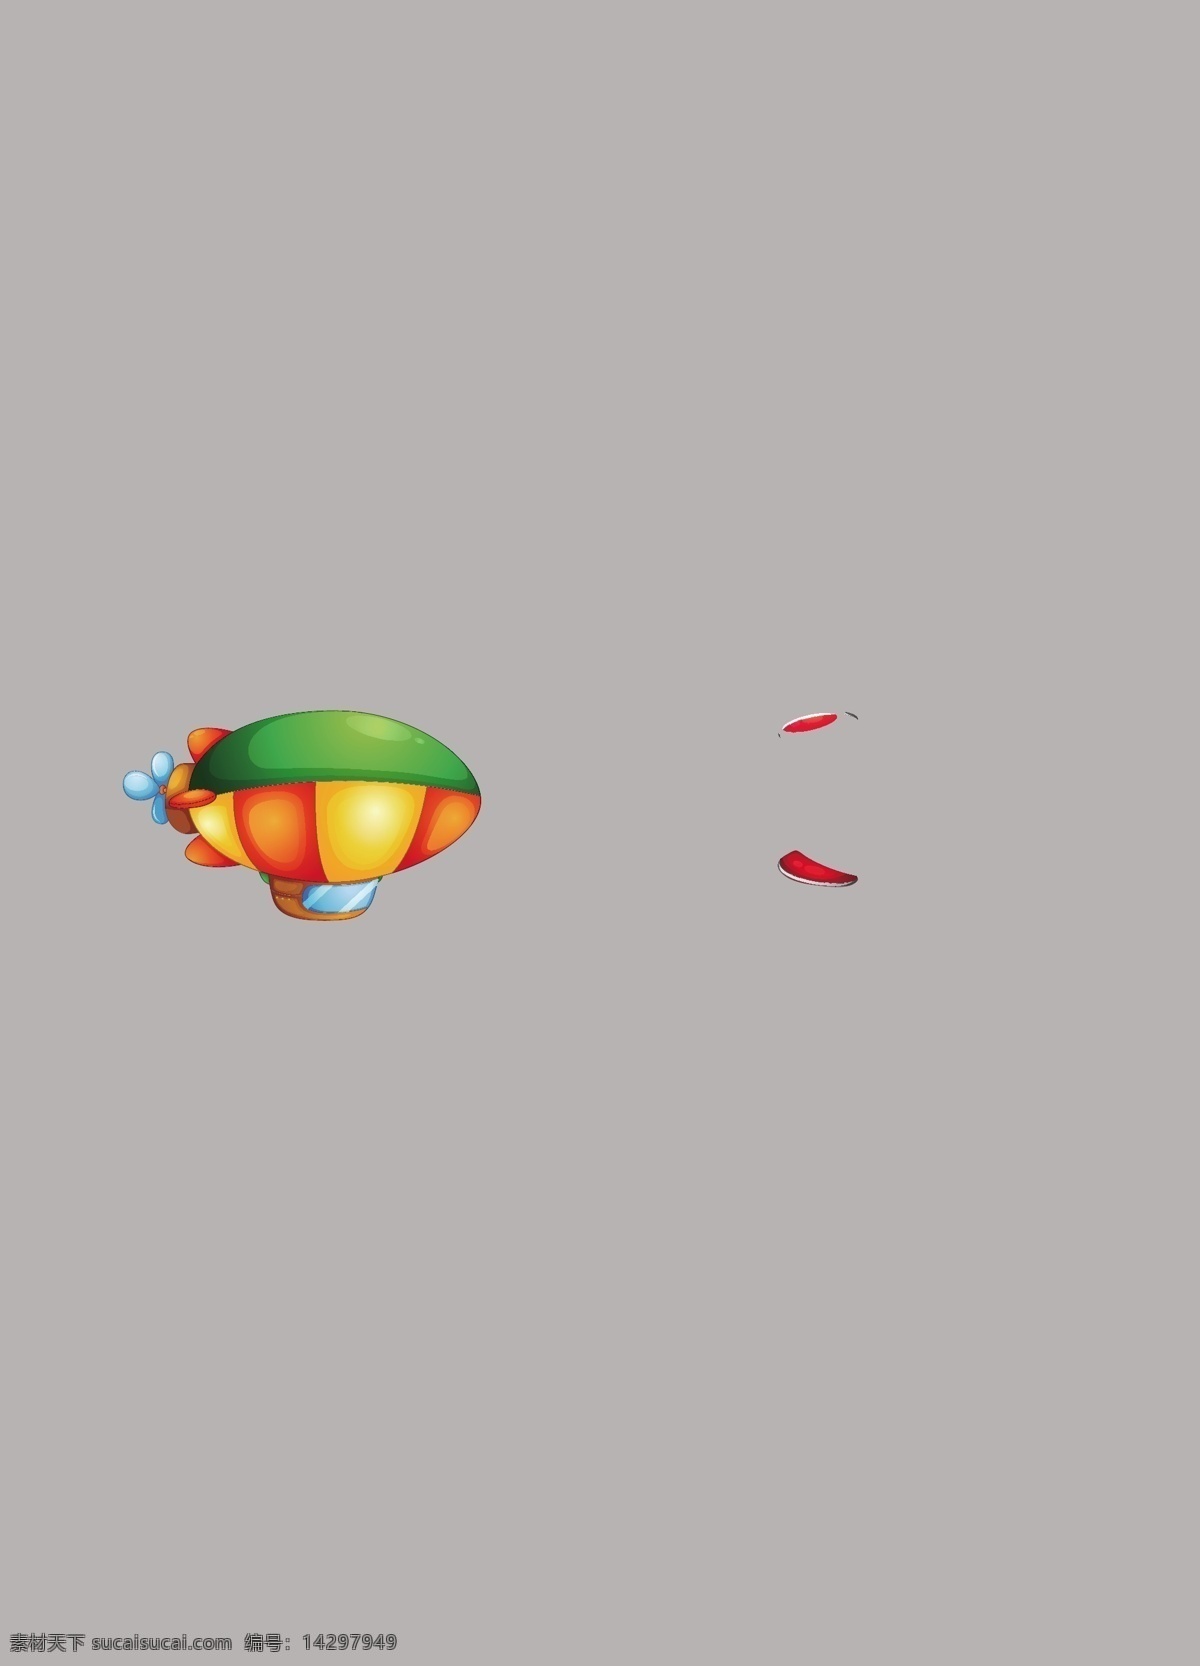 卡通 矢量 热气球 降落伞 装饰元素 eps素材